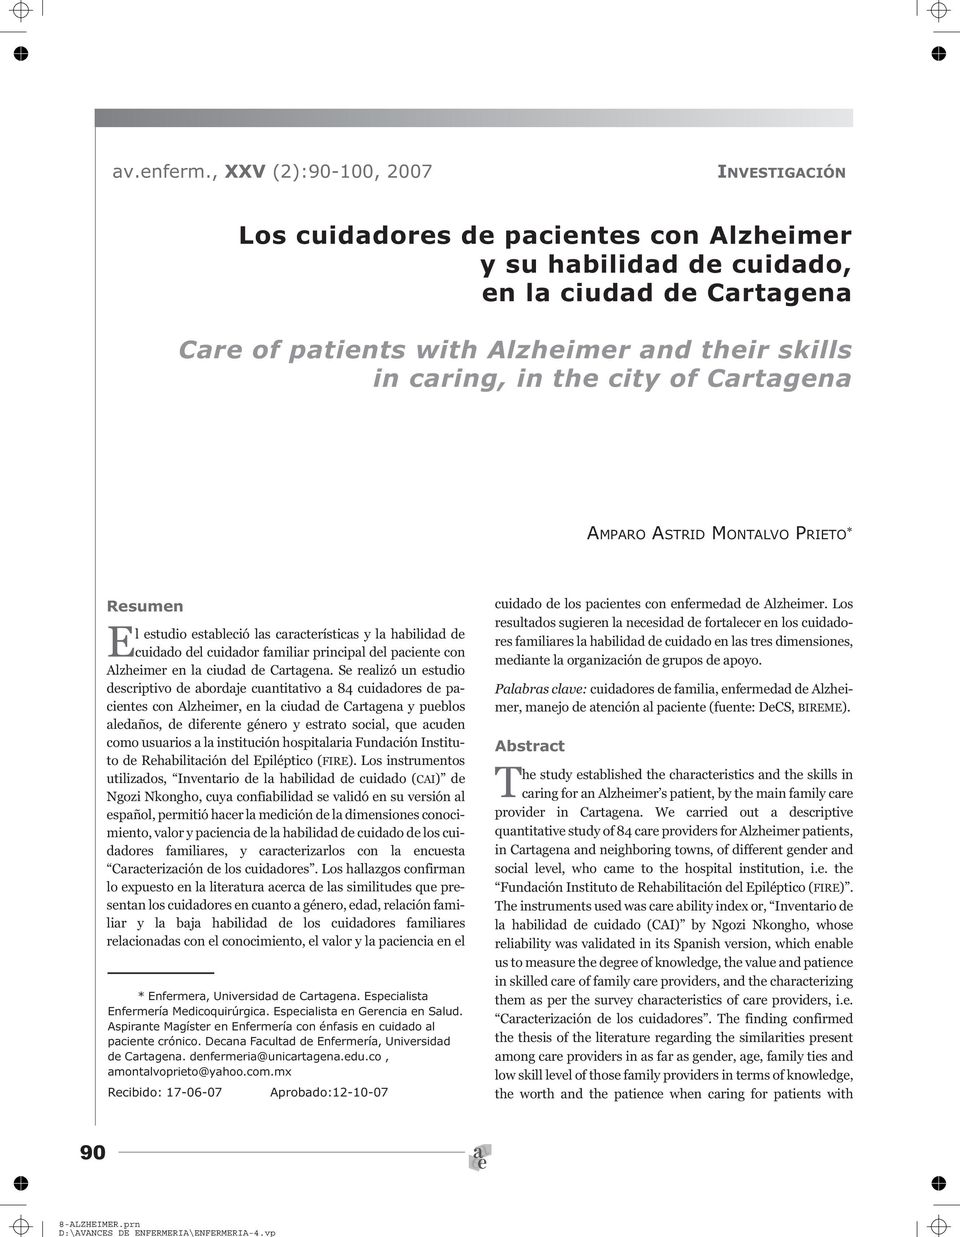 city of Cartagena AMPARO ASTRID MONTALVO PRIETO * Resumen El estudio estableció las características y la habilidad de cuidado del cuidador familiar principal del paciente con Alzheimer en la ciudad